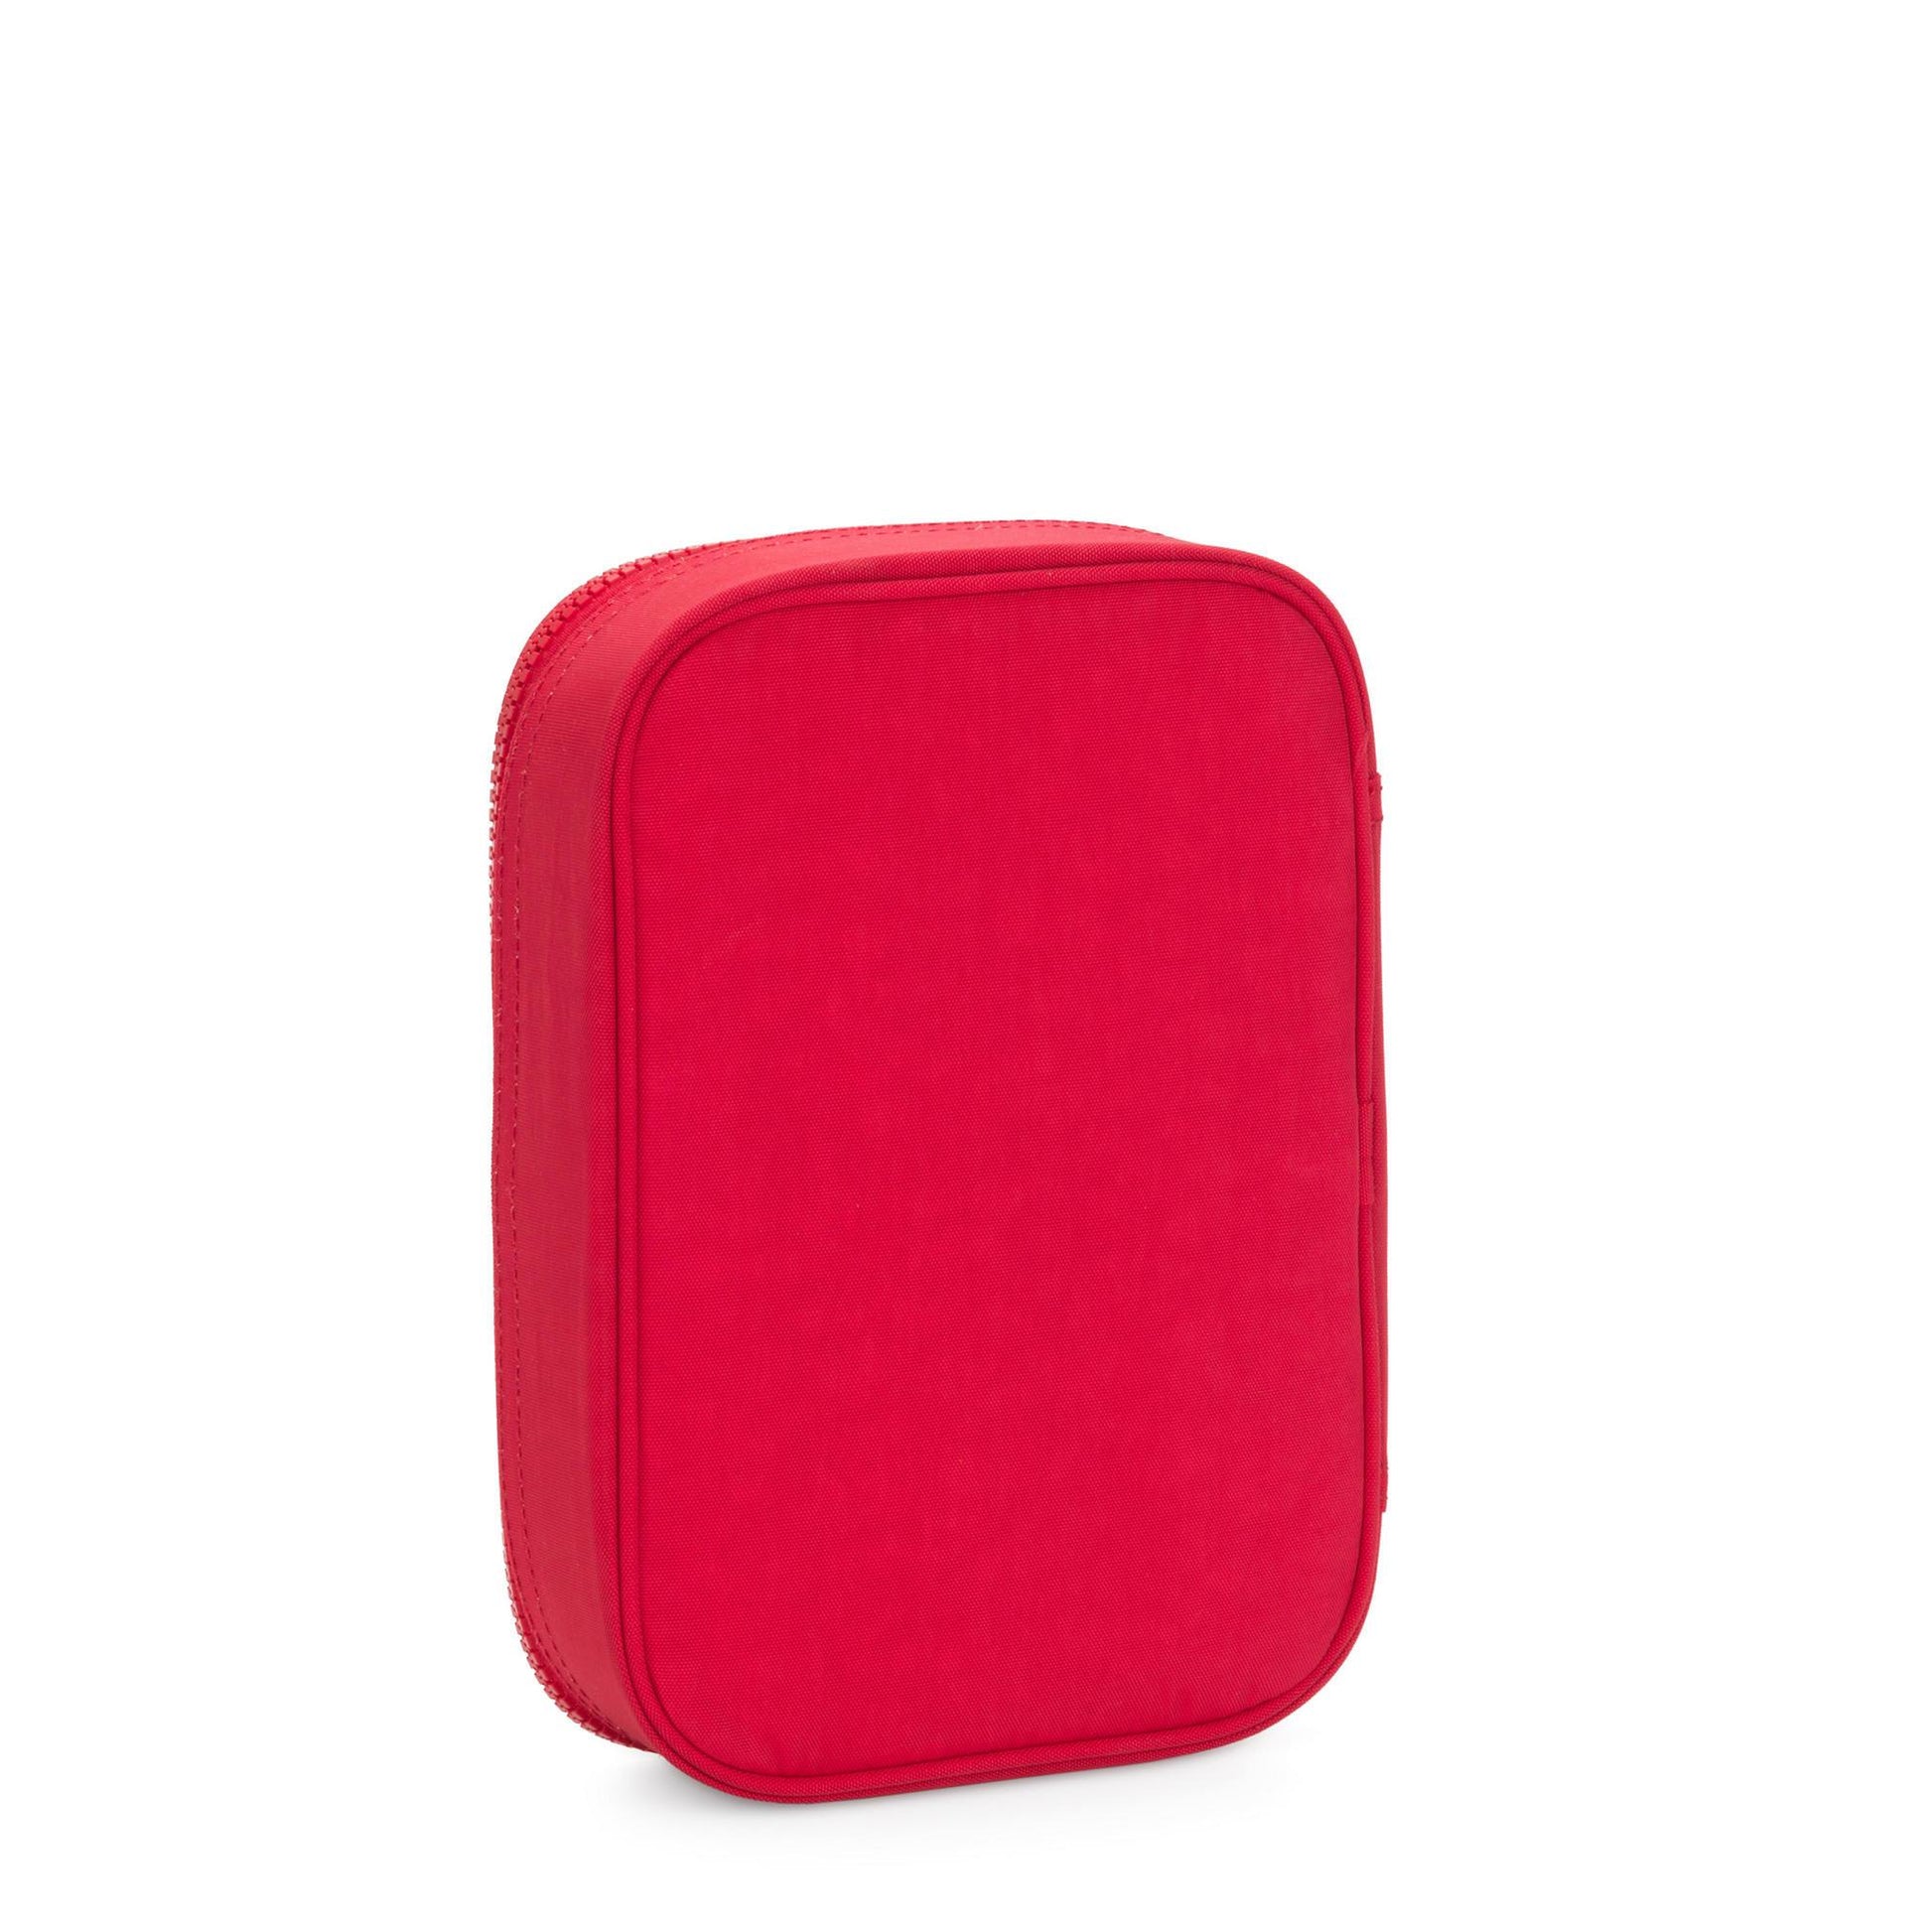 Kipling 100 Pens Case - Red Rouge 